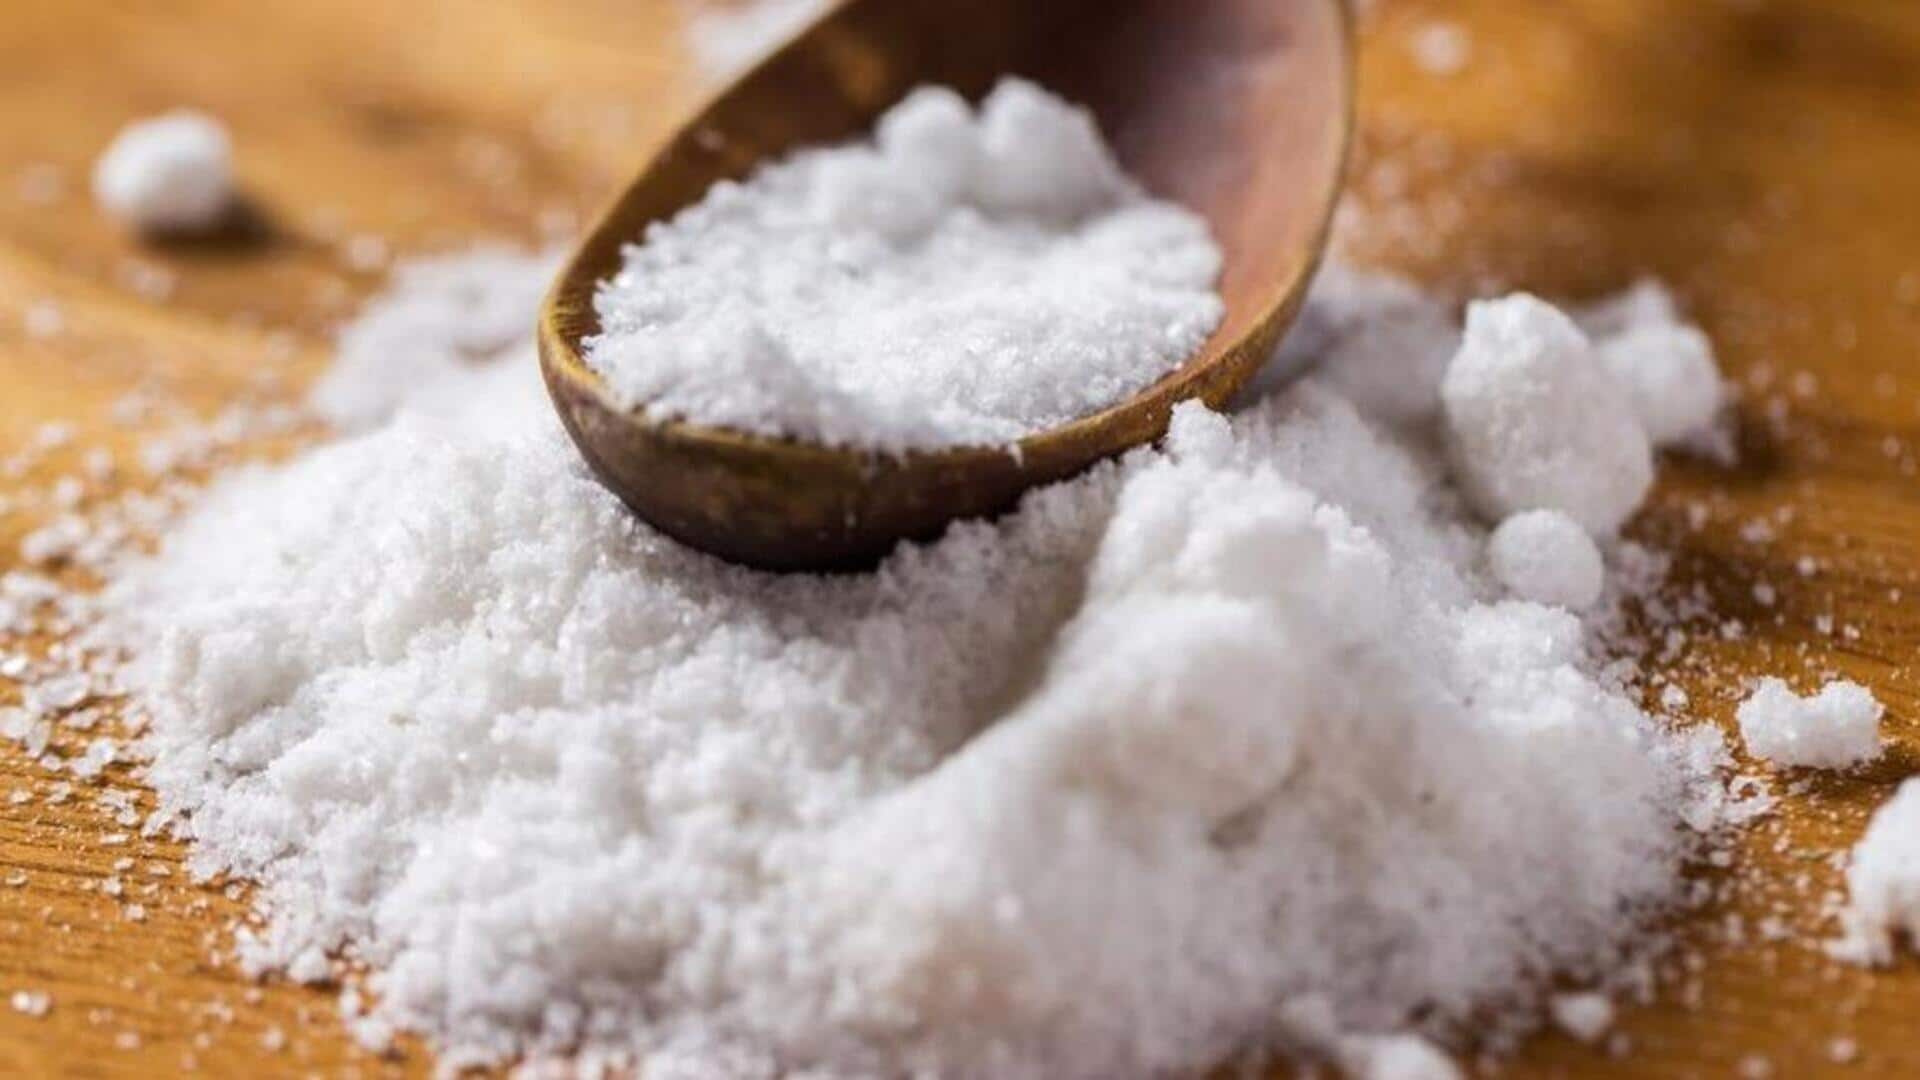 Memahami berbagai jenis garam, kegunaannya, dan manfaatnya bagi kesehatan